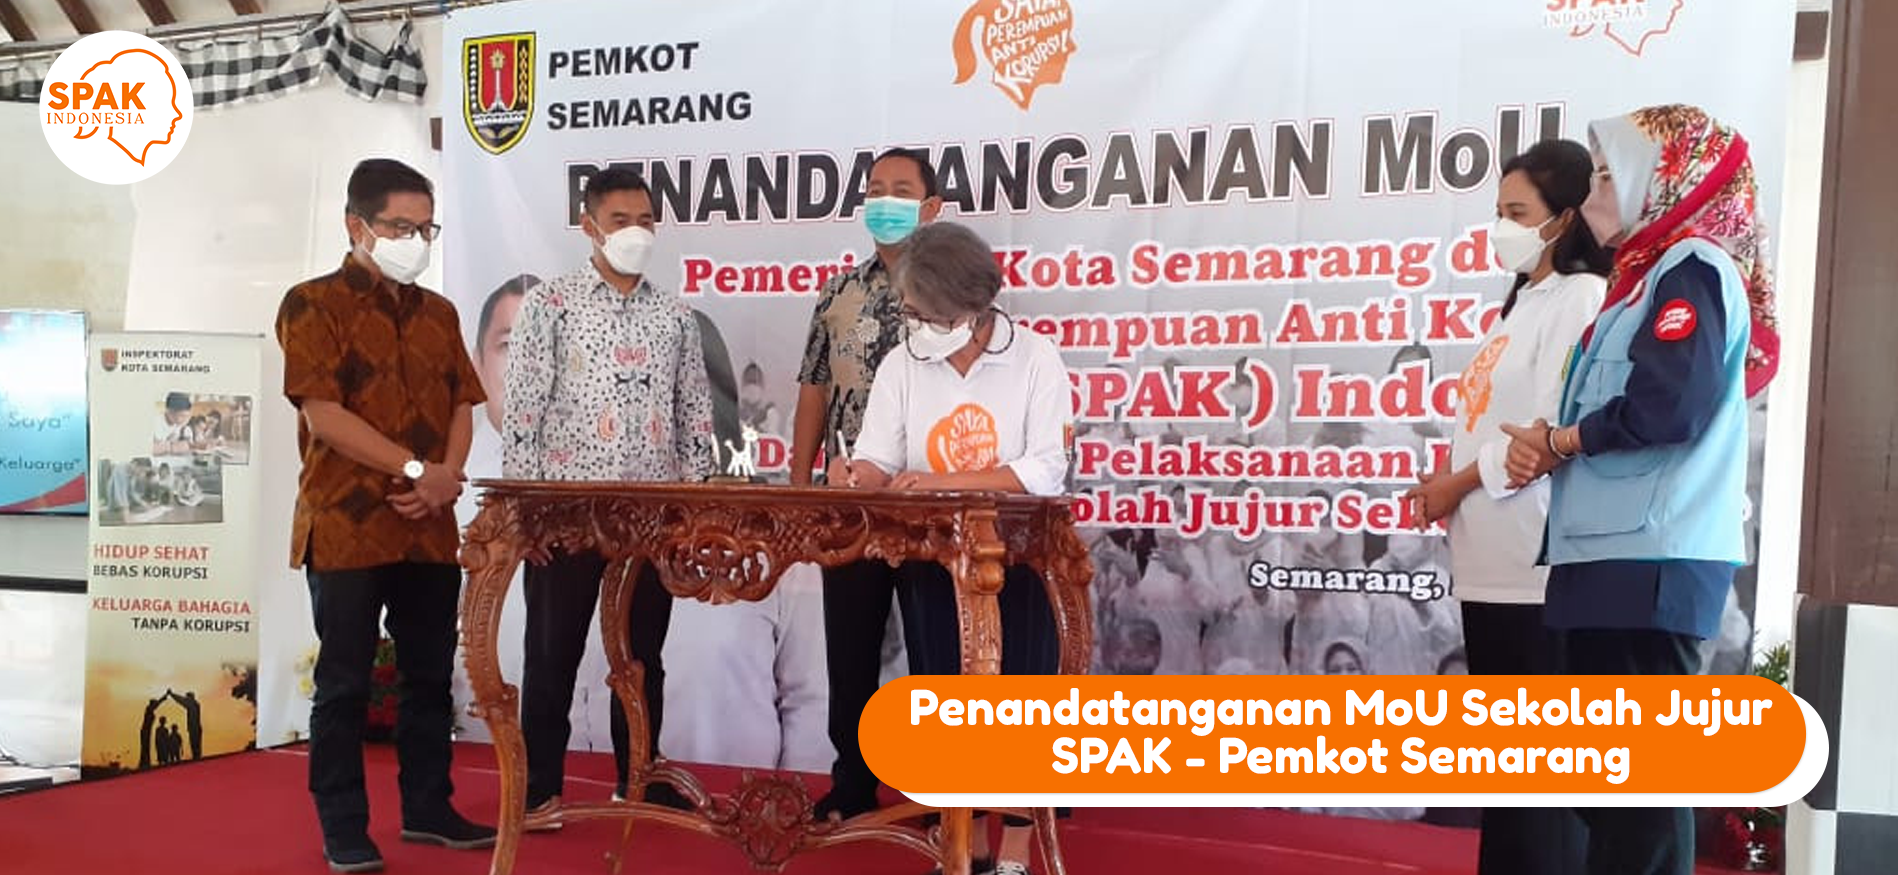 Penandatanganan MoU Sekolah Jujur Sekolah Saya SPAK Semarang